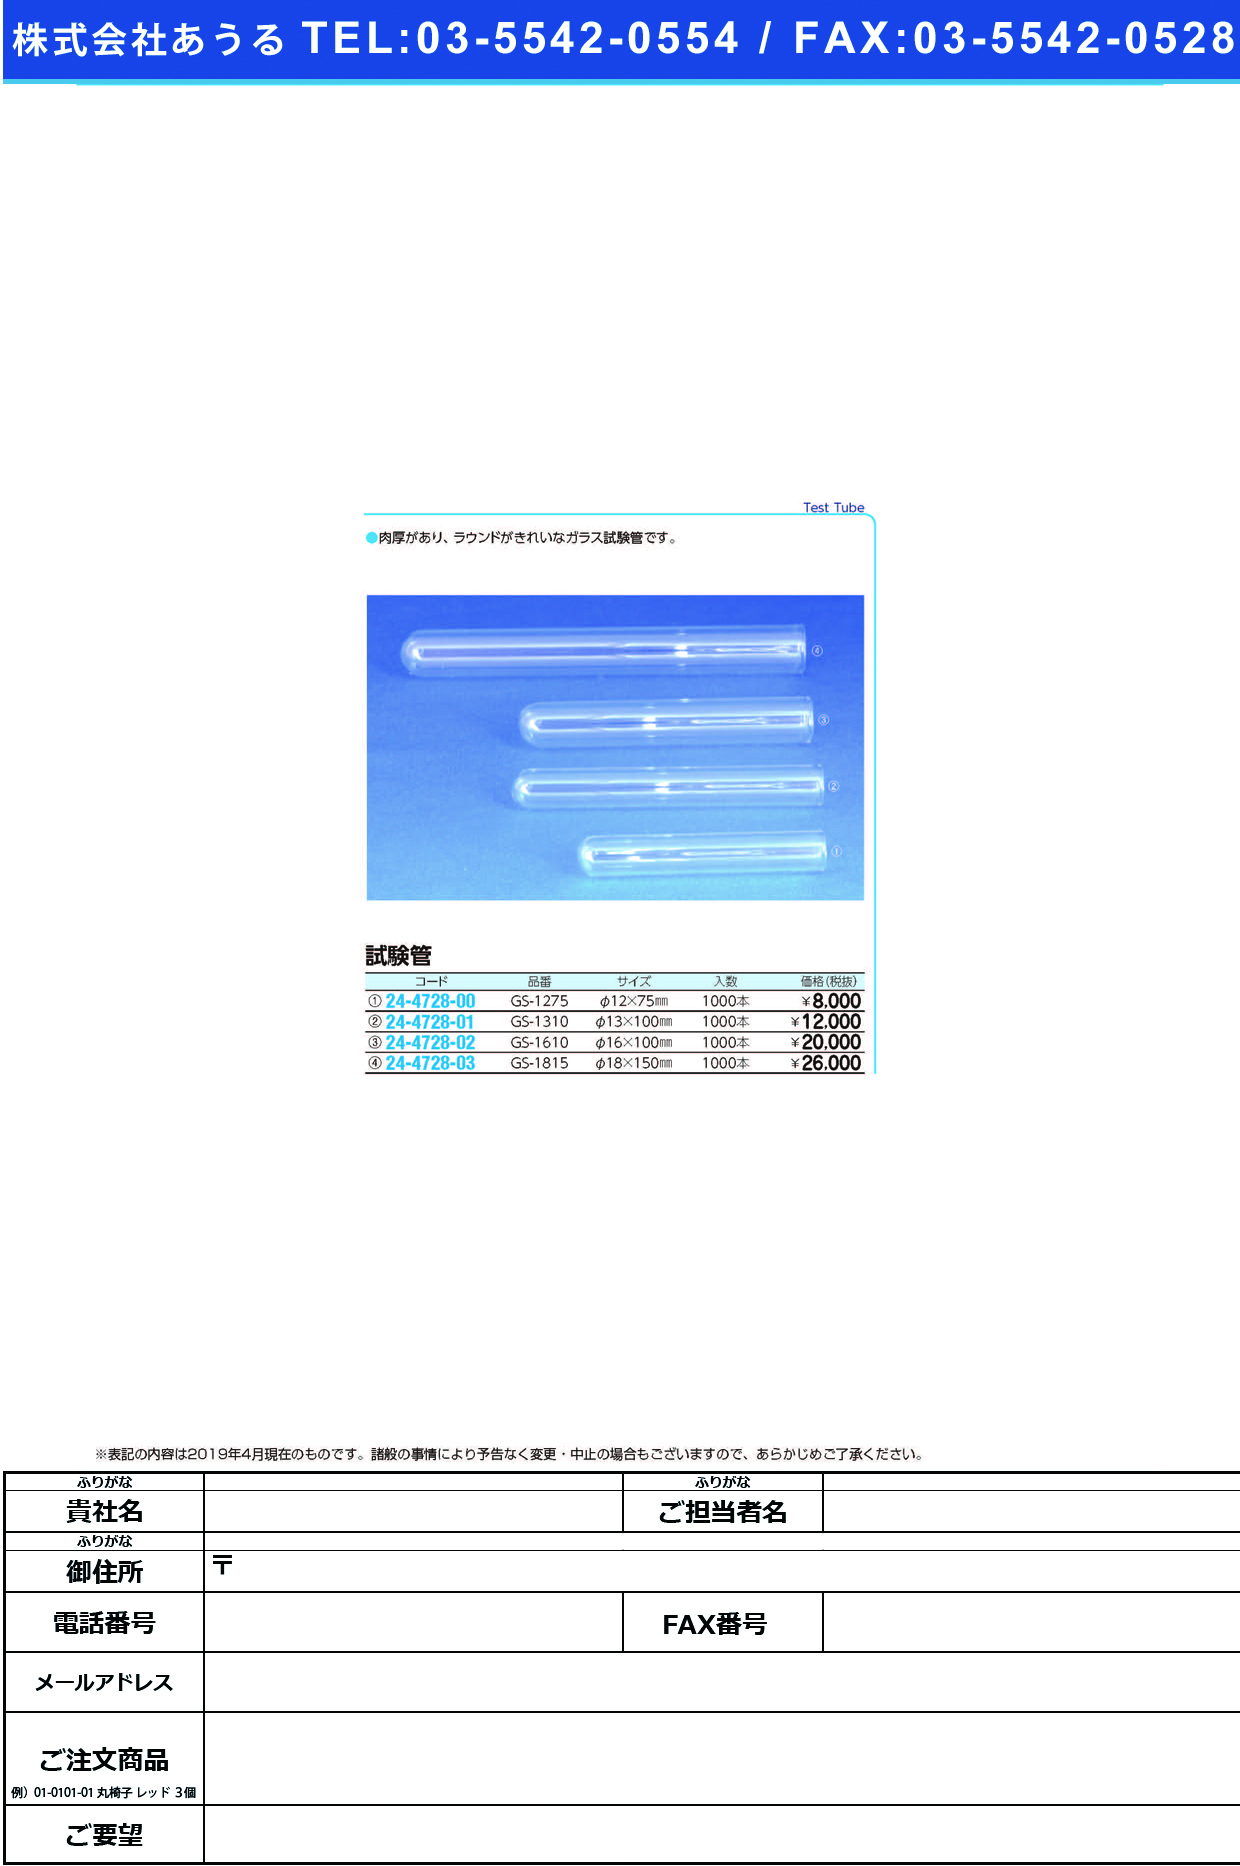 (24-4728-02)試験管（ガラス製） GS-1610(1000ﾎﾝ) ｼｹﾝｶﾝ(ｶﾞﾗｽｾｲ)【1箱単位】【2019年カタログ商品】